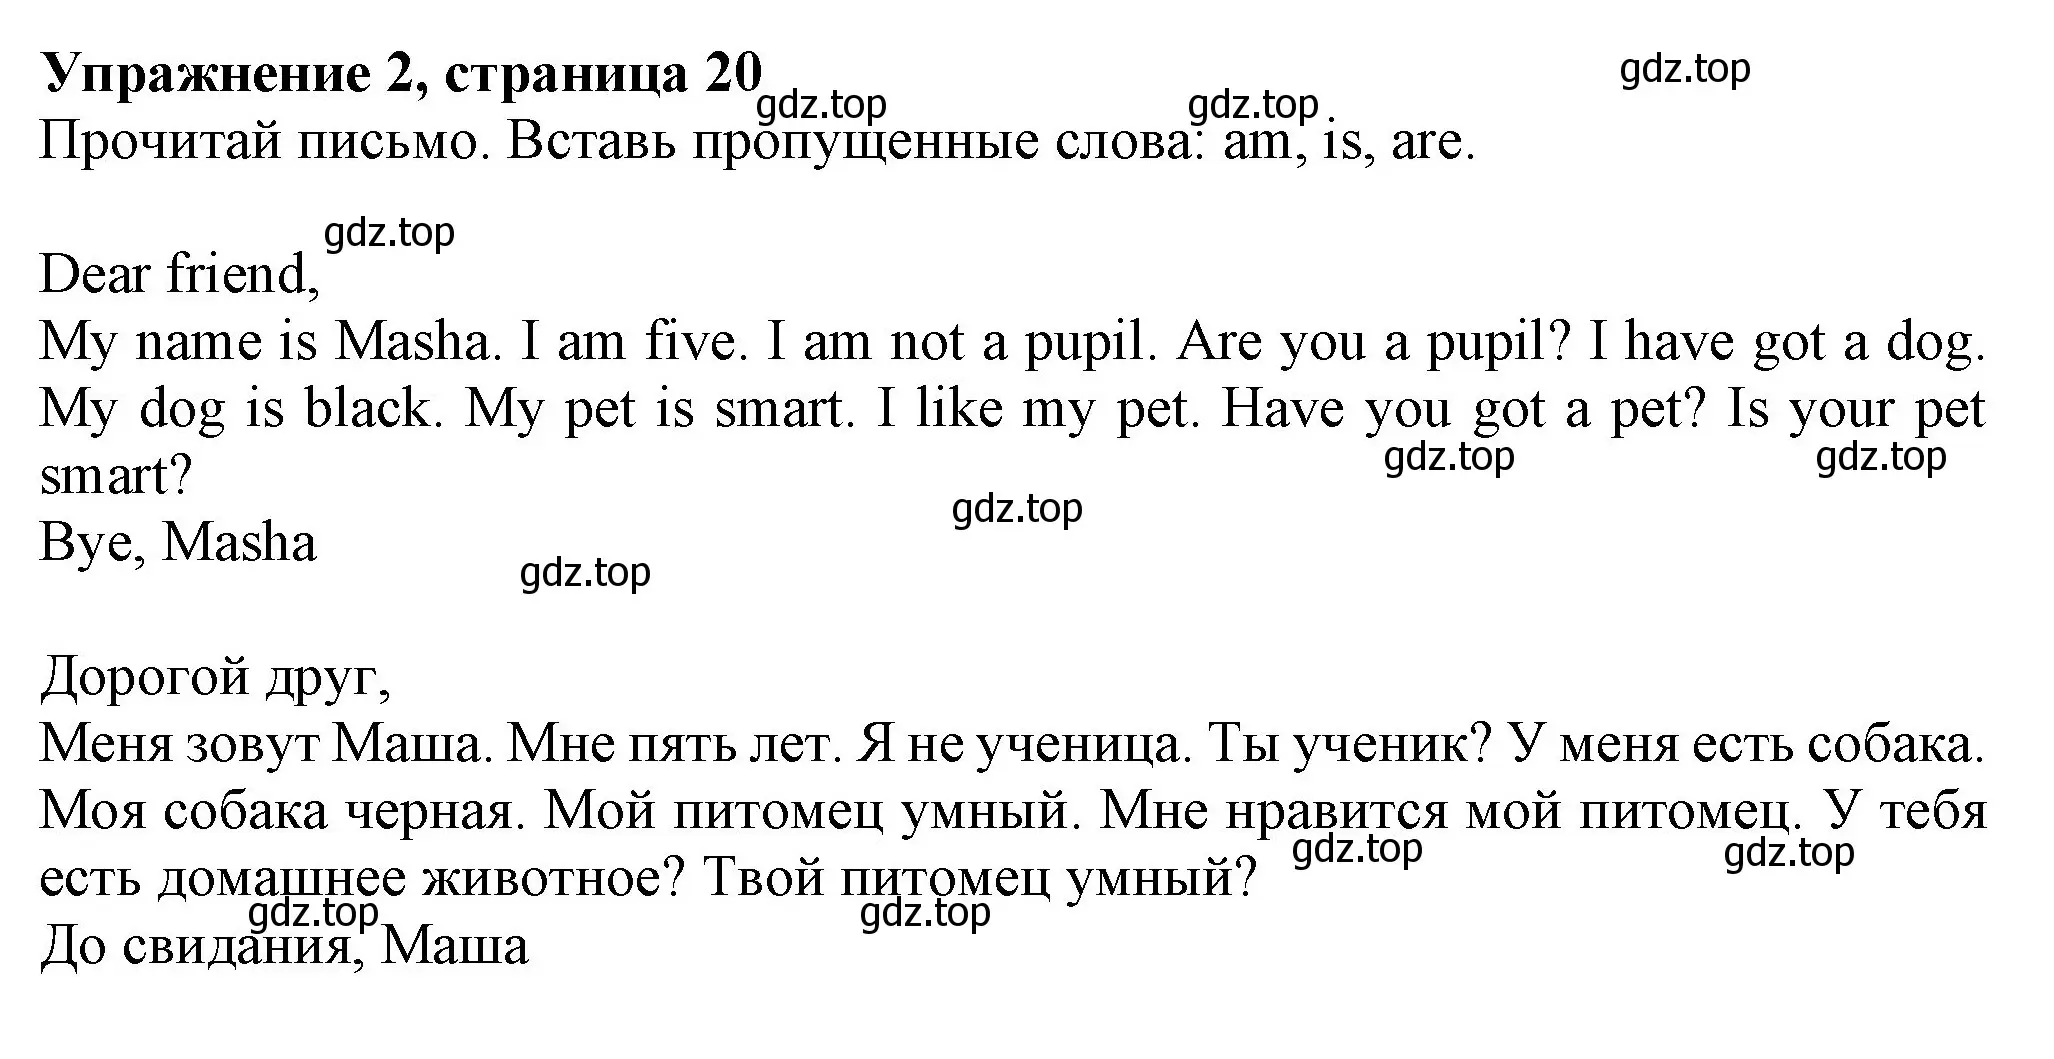 Решение номер 2 (страница 20) гдз по английскому языку 3 класс Биболетова, Денисенко, рабочая тетрадь